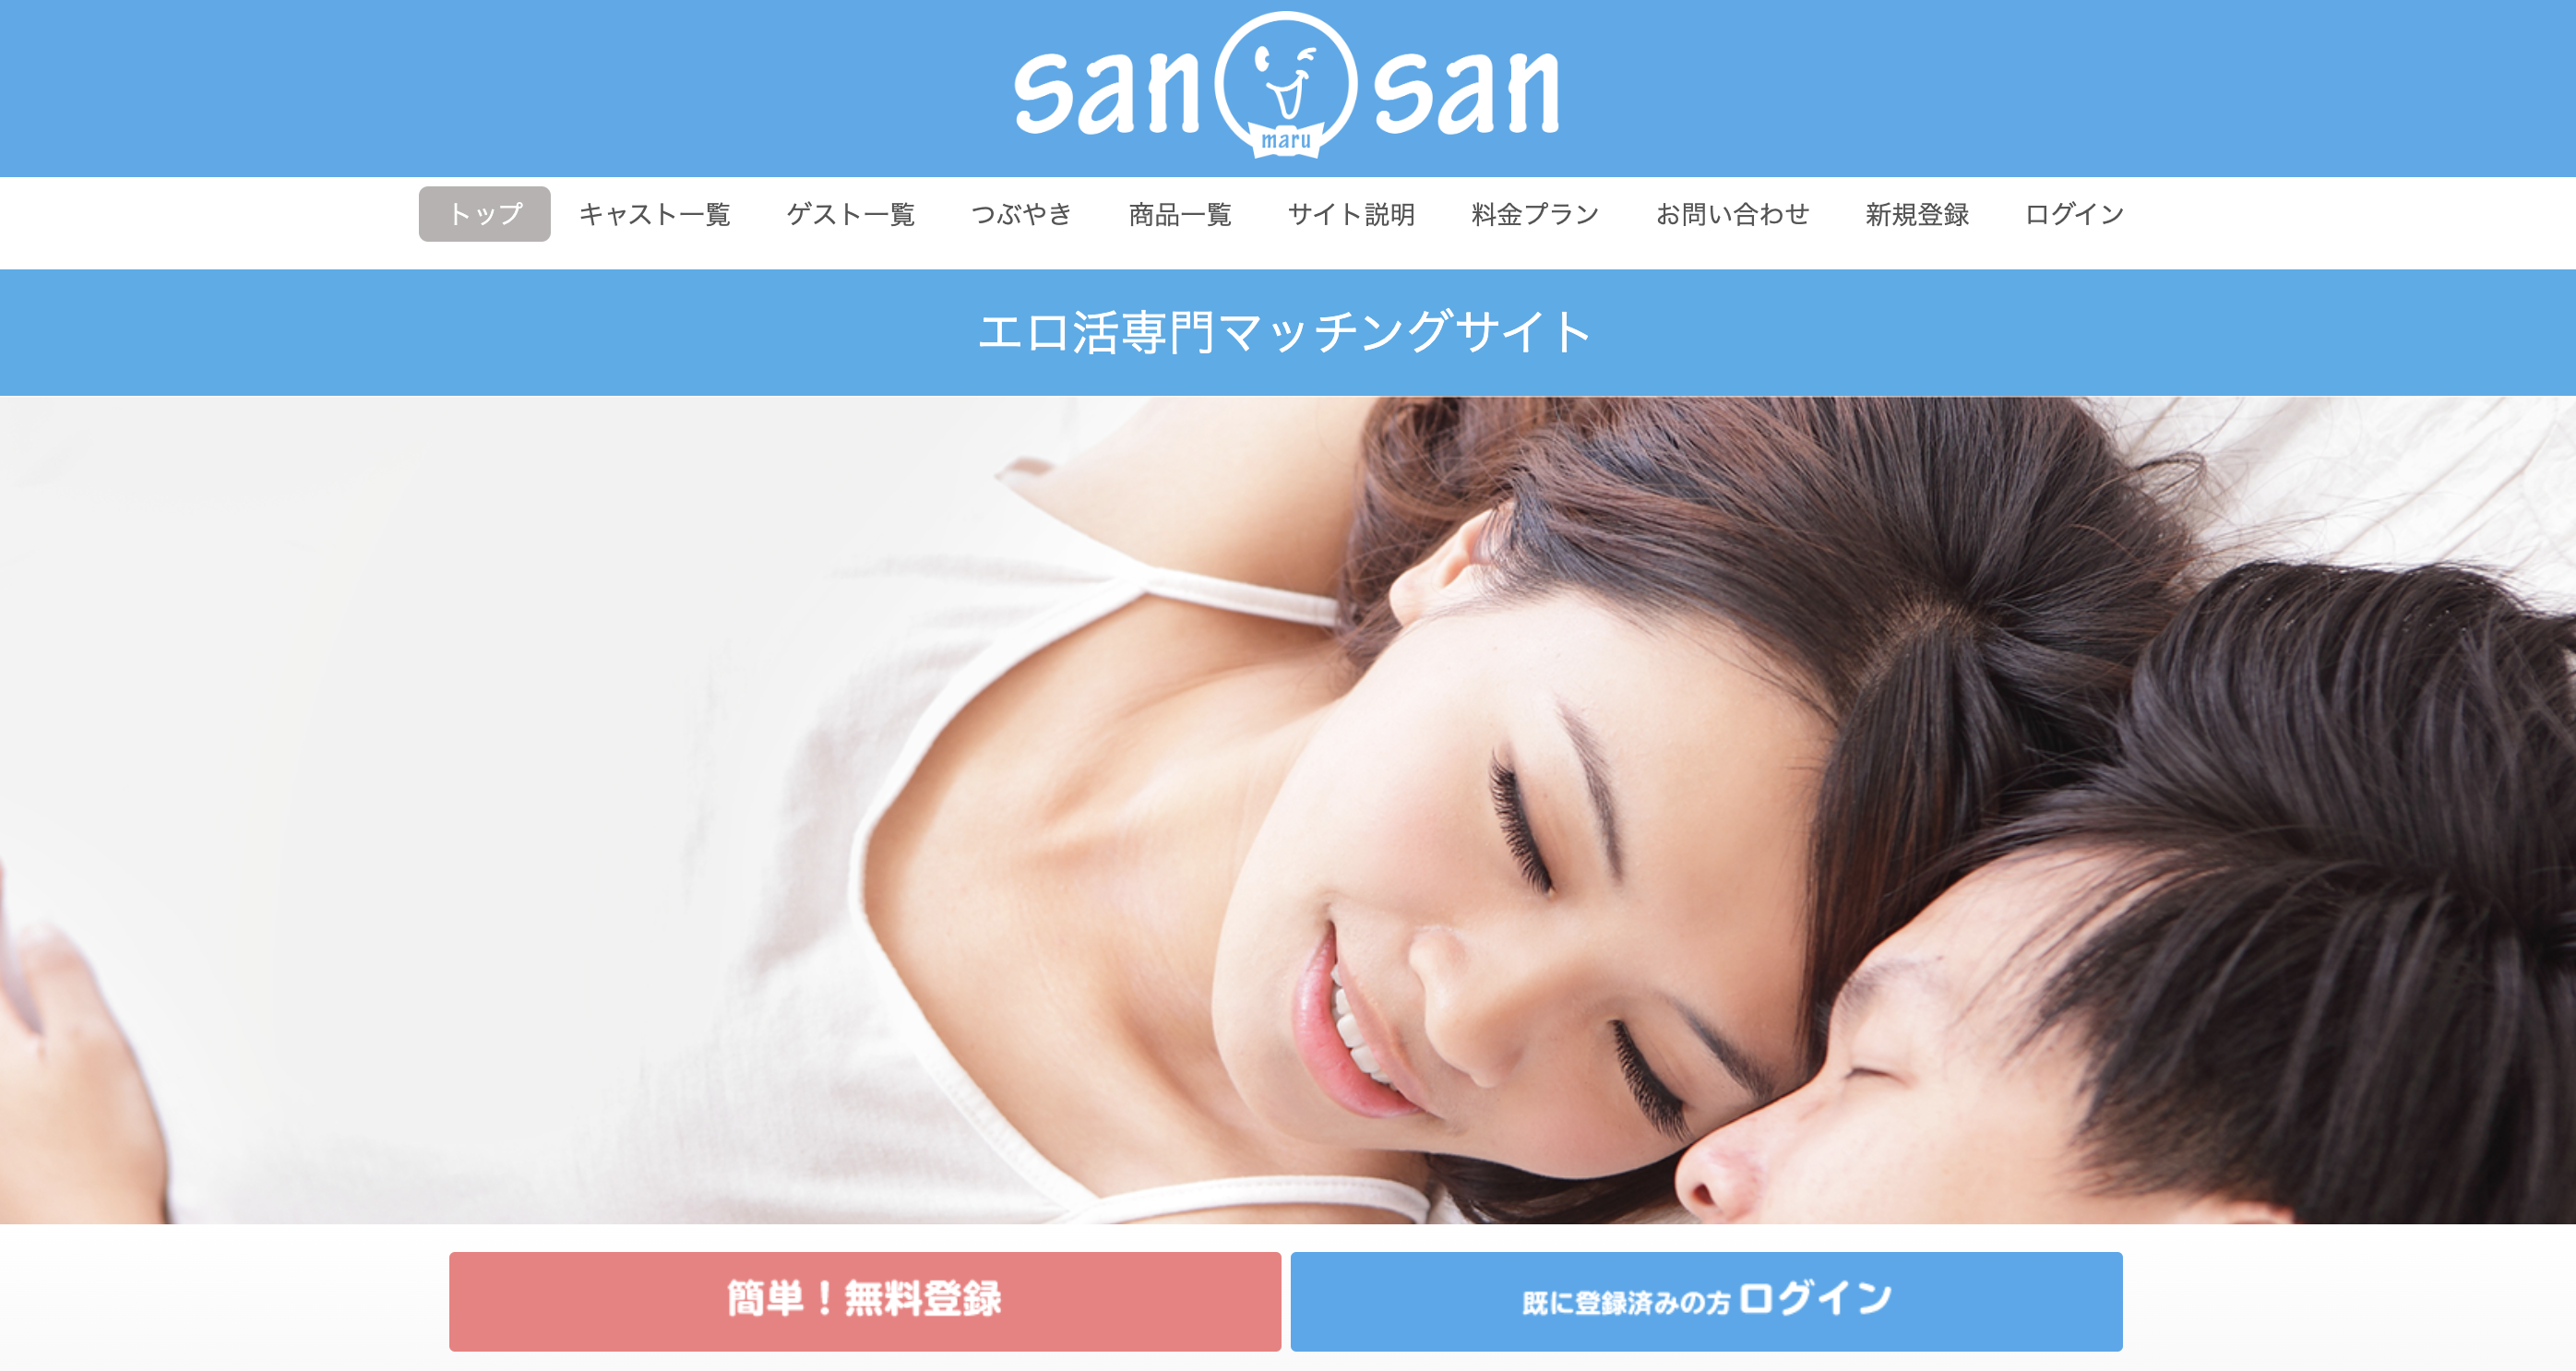 今本当にオススメしたいマッチングサイト「sanmarusan」